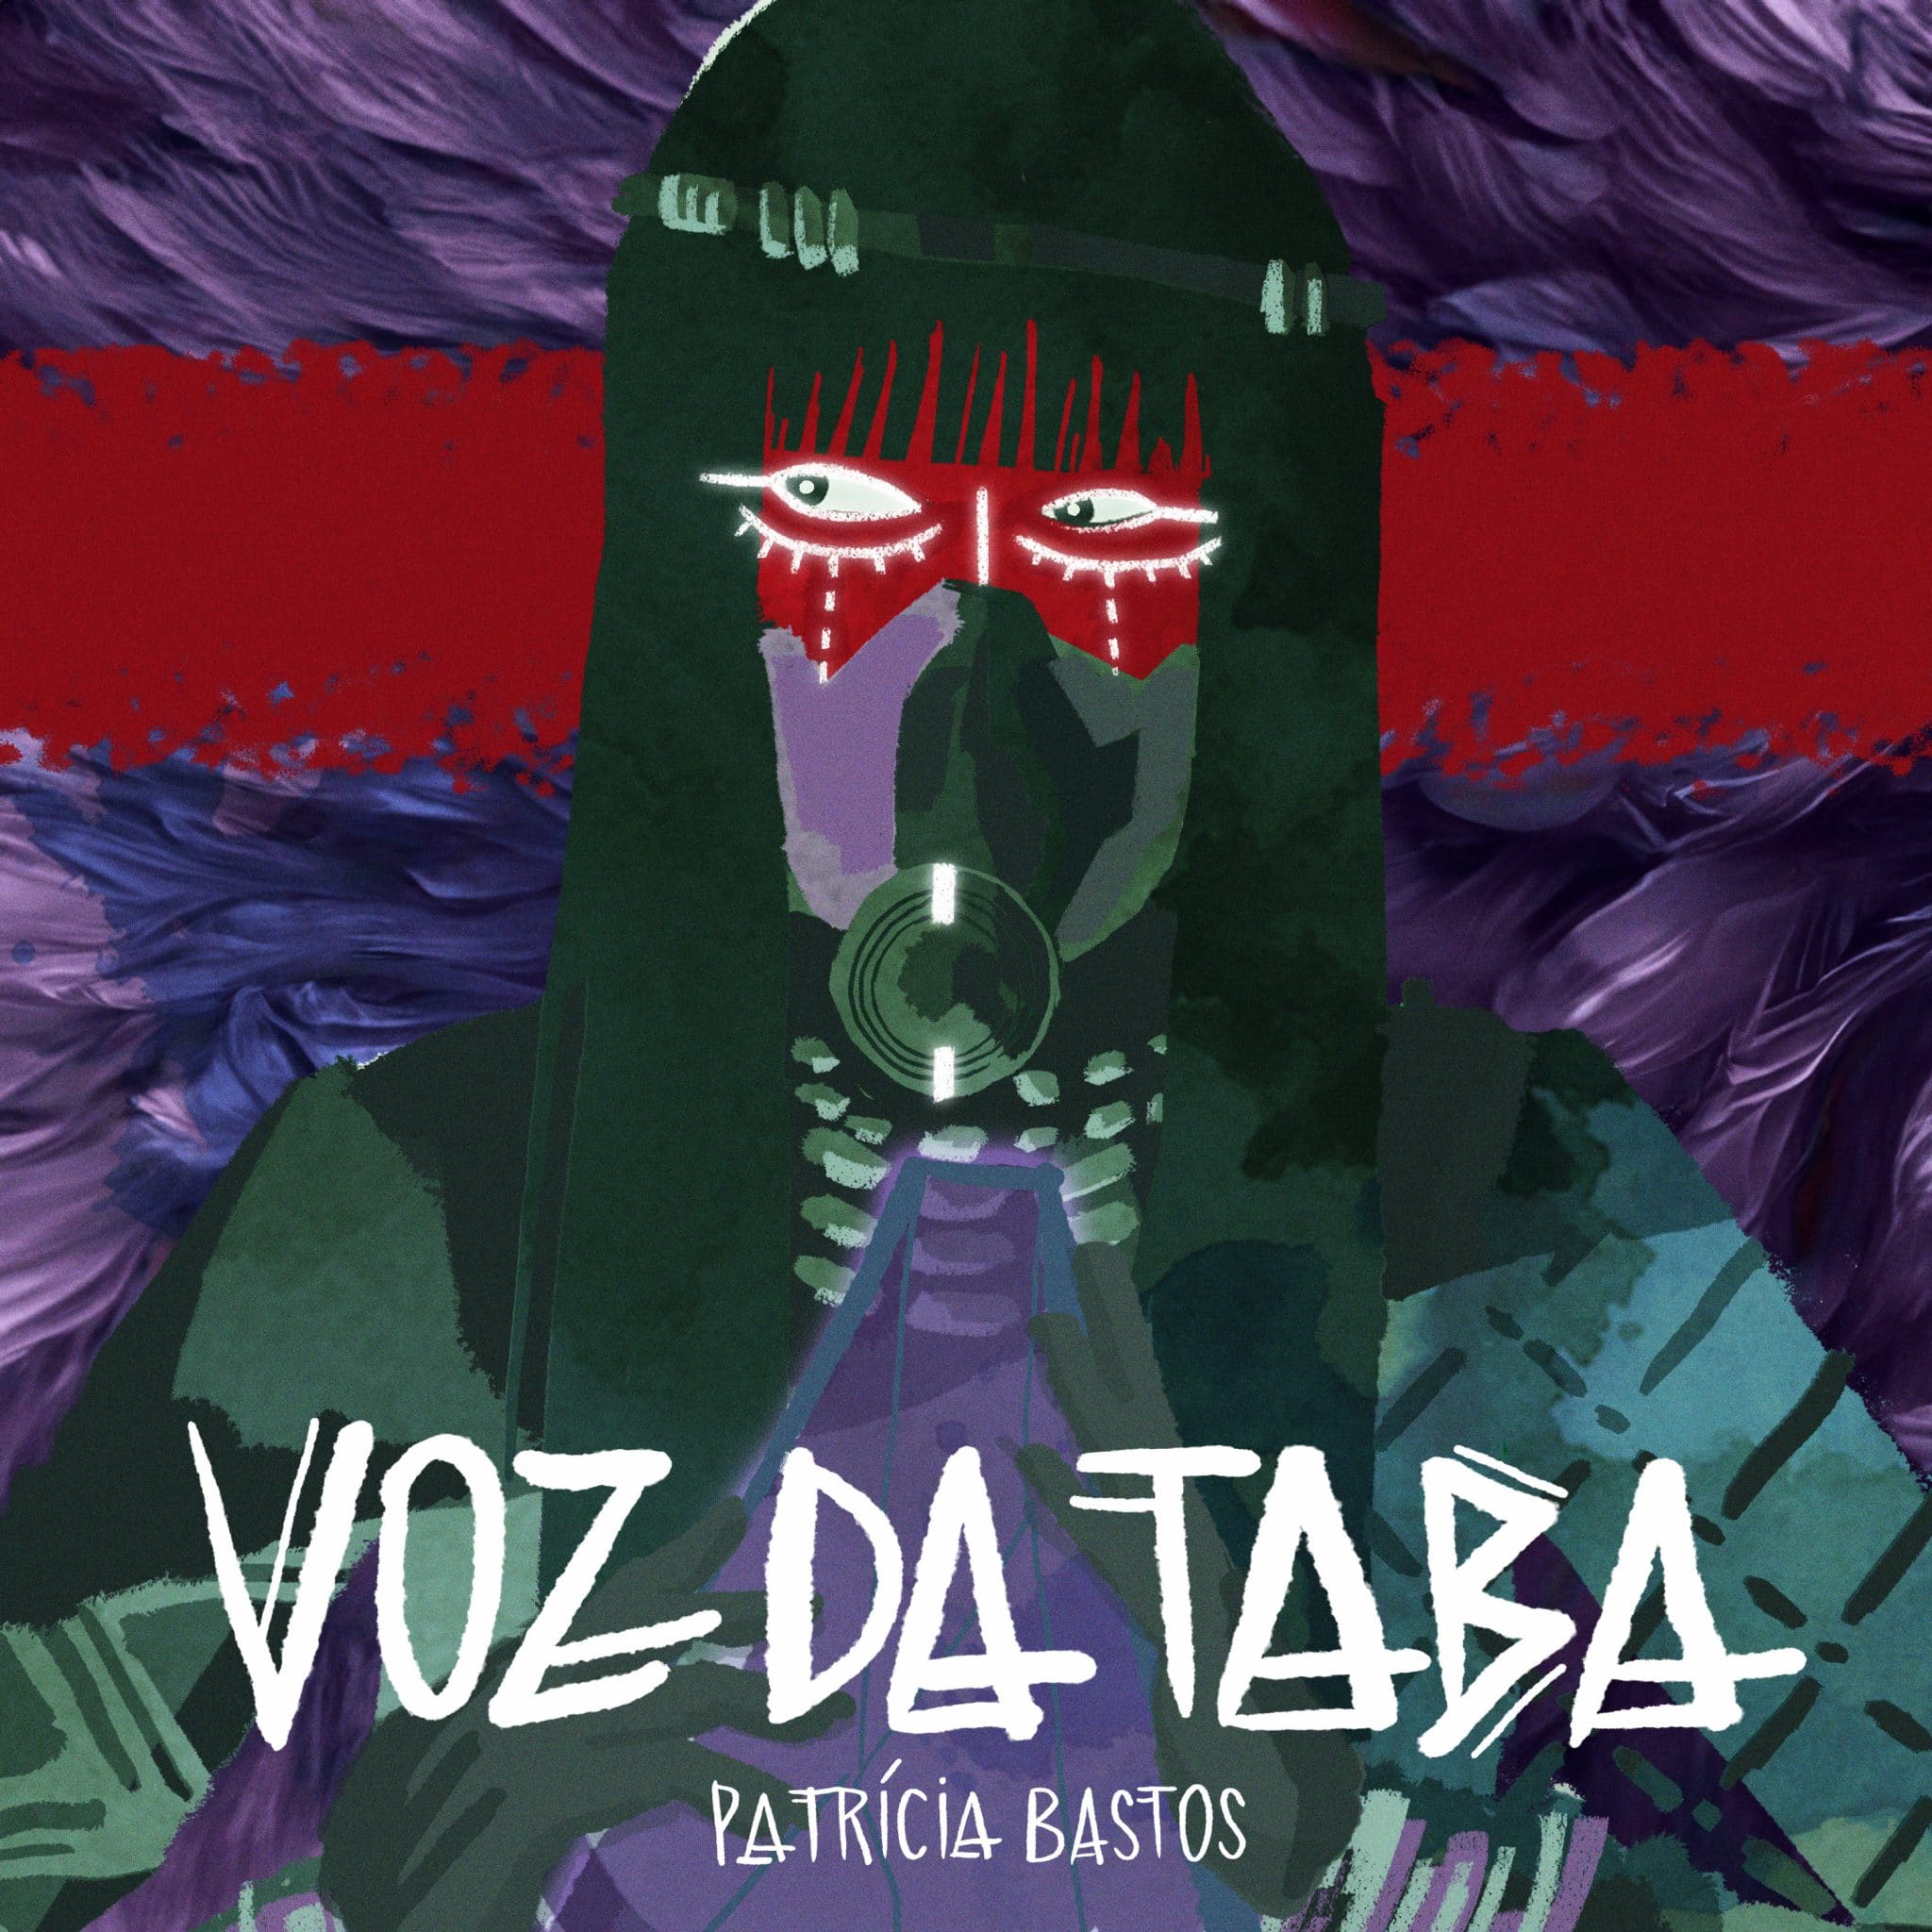 revistaprosaversoearte.com - Patricia Bastos lança álbum 'Voz da Taba'